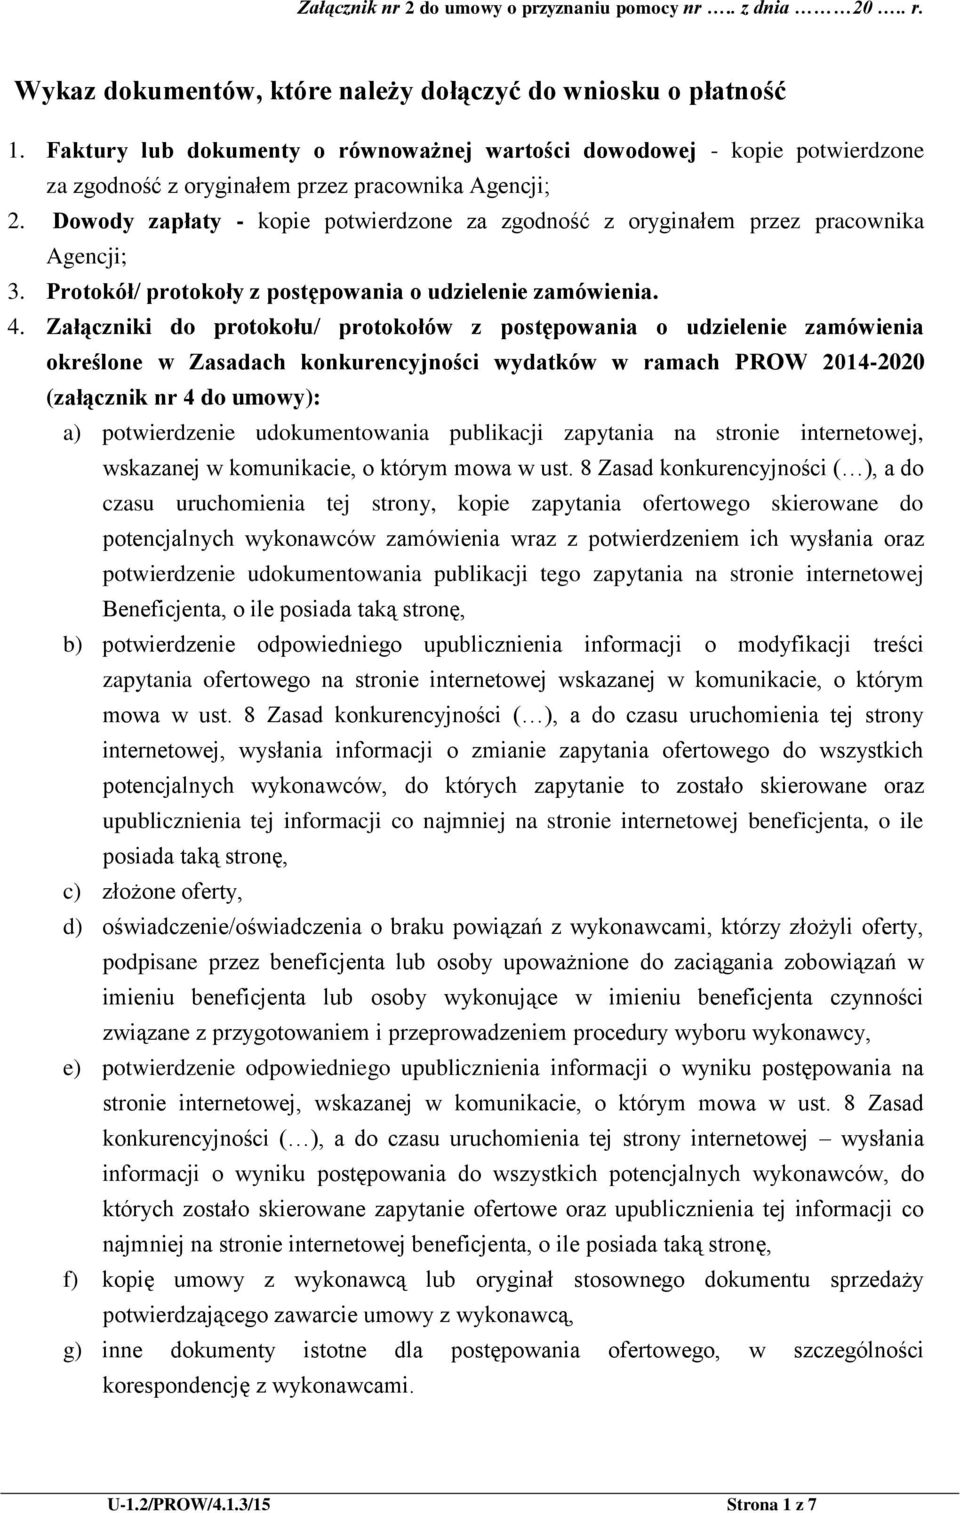 Załączniki do protokołu/ protokołów z postępowania o udzielenie zamówienia określone w Zasadach konkurencyjności wydatków w ramach PROW 2014-2020 (załącznik nr 4 do umowy): a) potwierdzenie